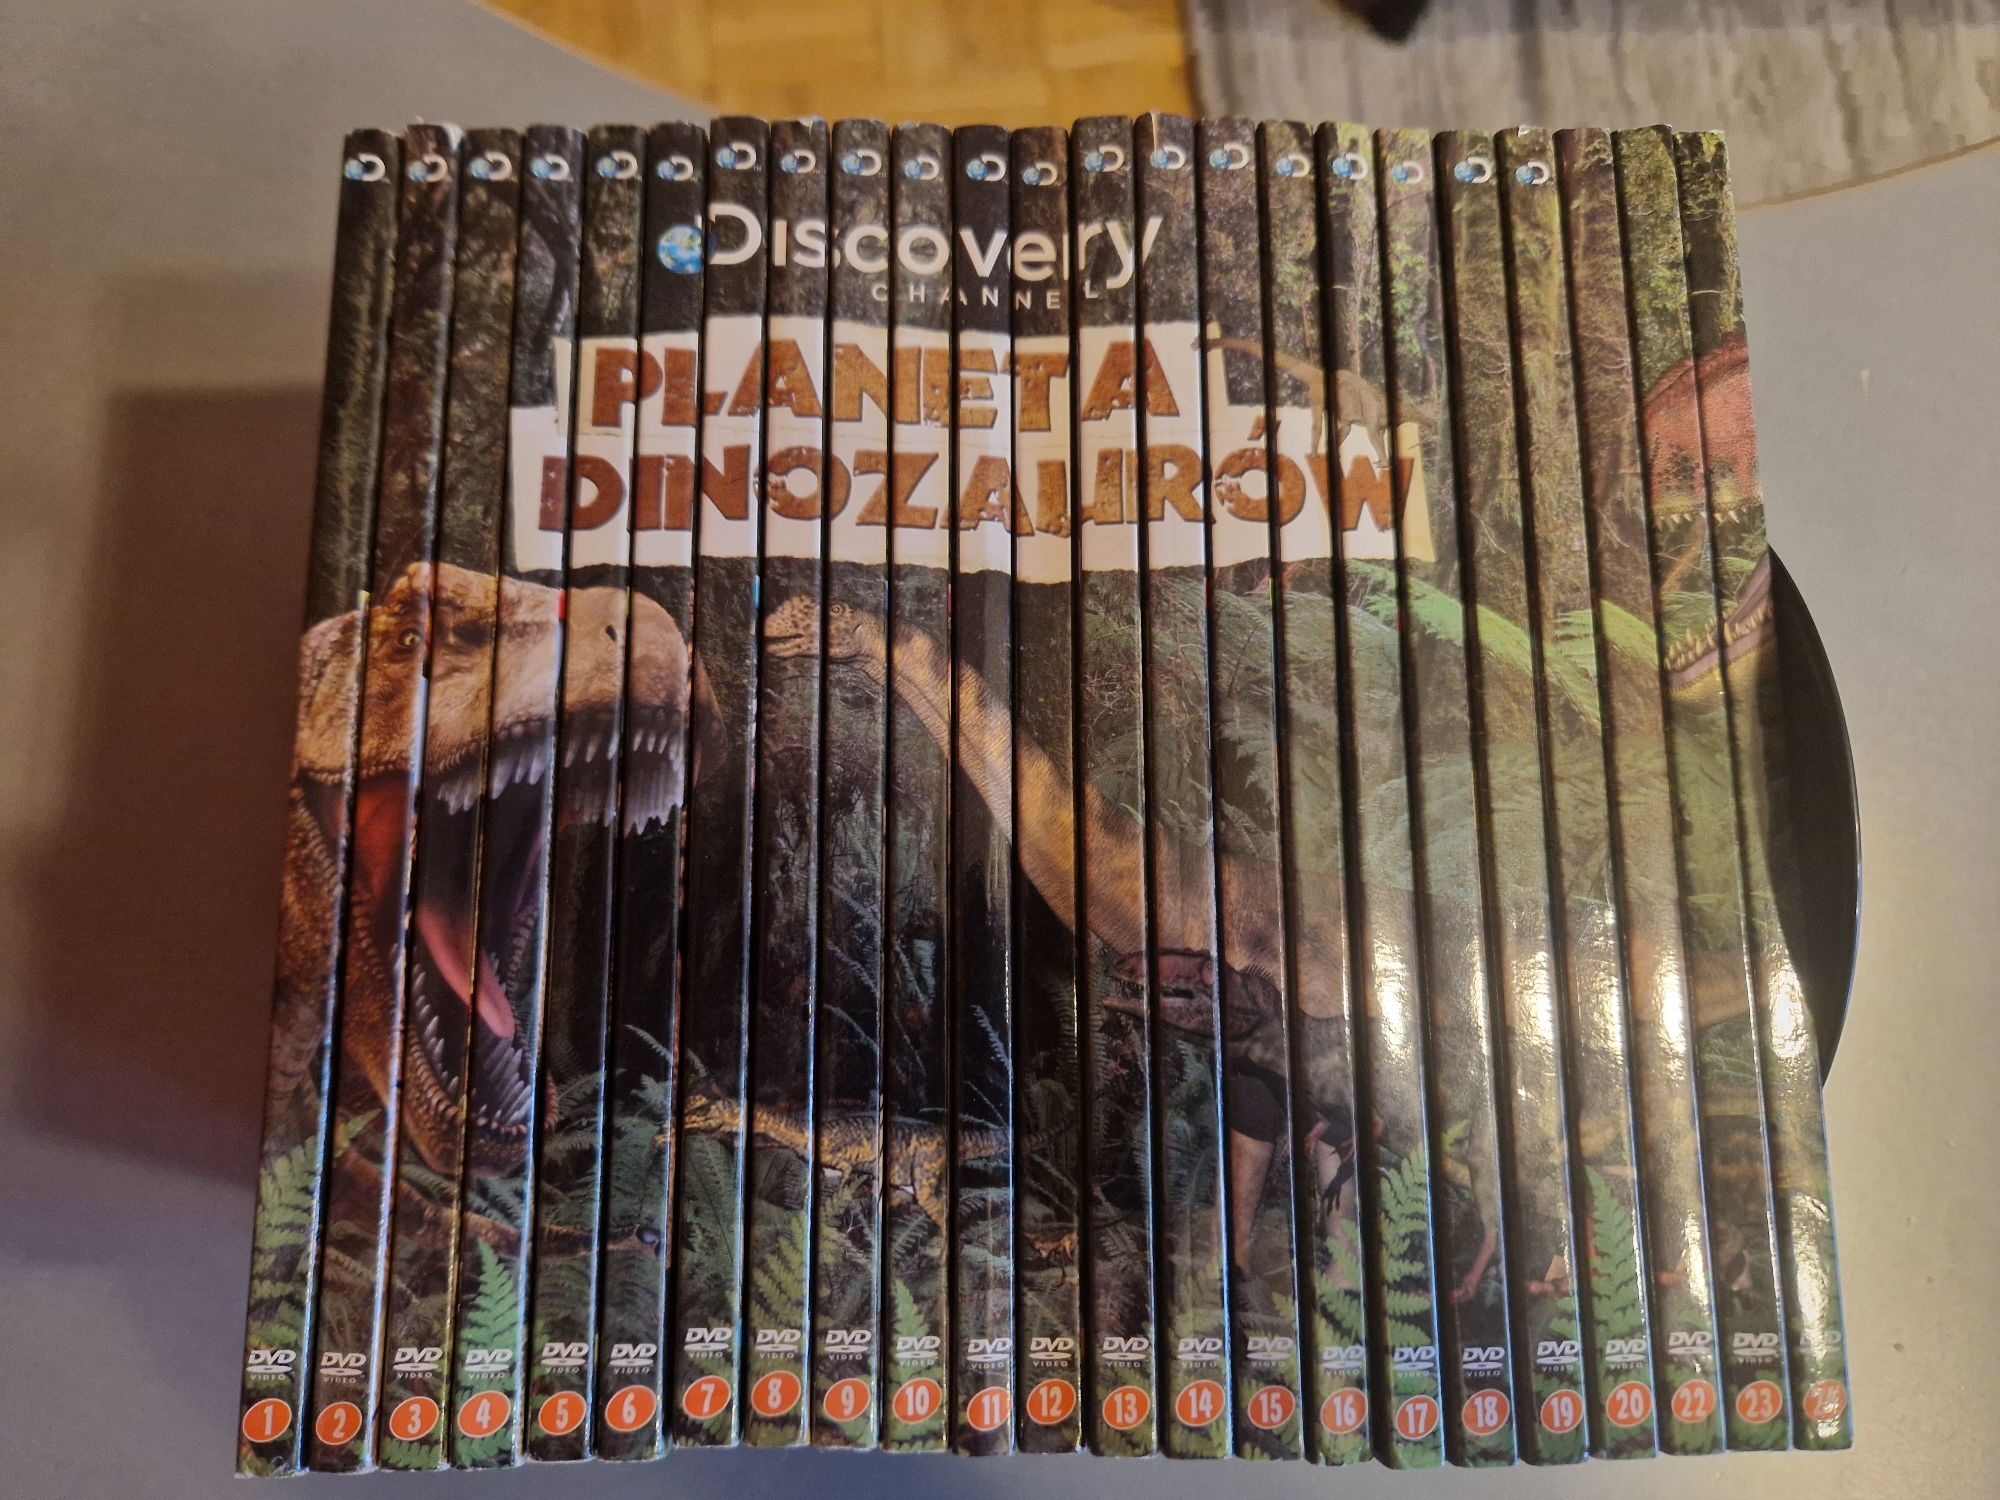 Planeta Dinozaurów (Discovery Channel) 25 (DVD) Zestaw